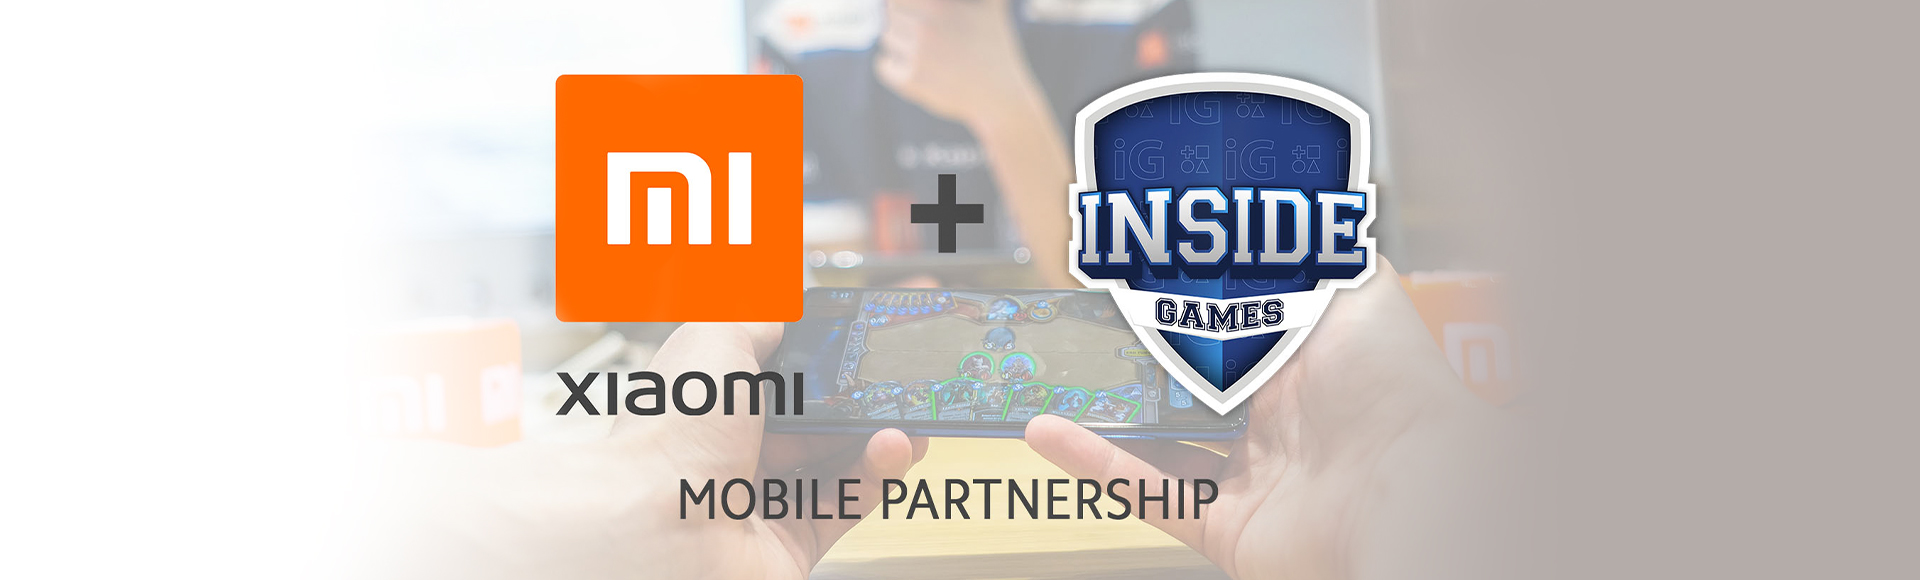 Vstupujeme do mobilního gamingu, stáváme se hrdým partnerem týmu Inside Games